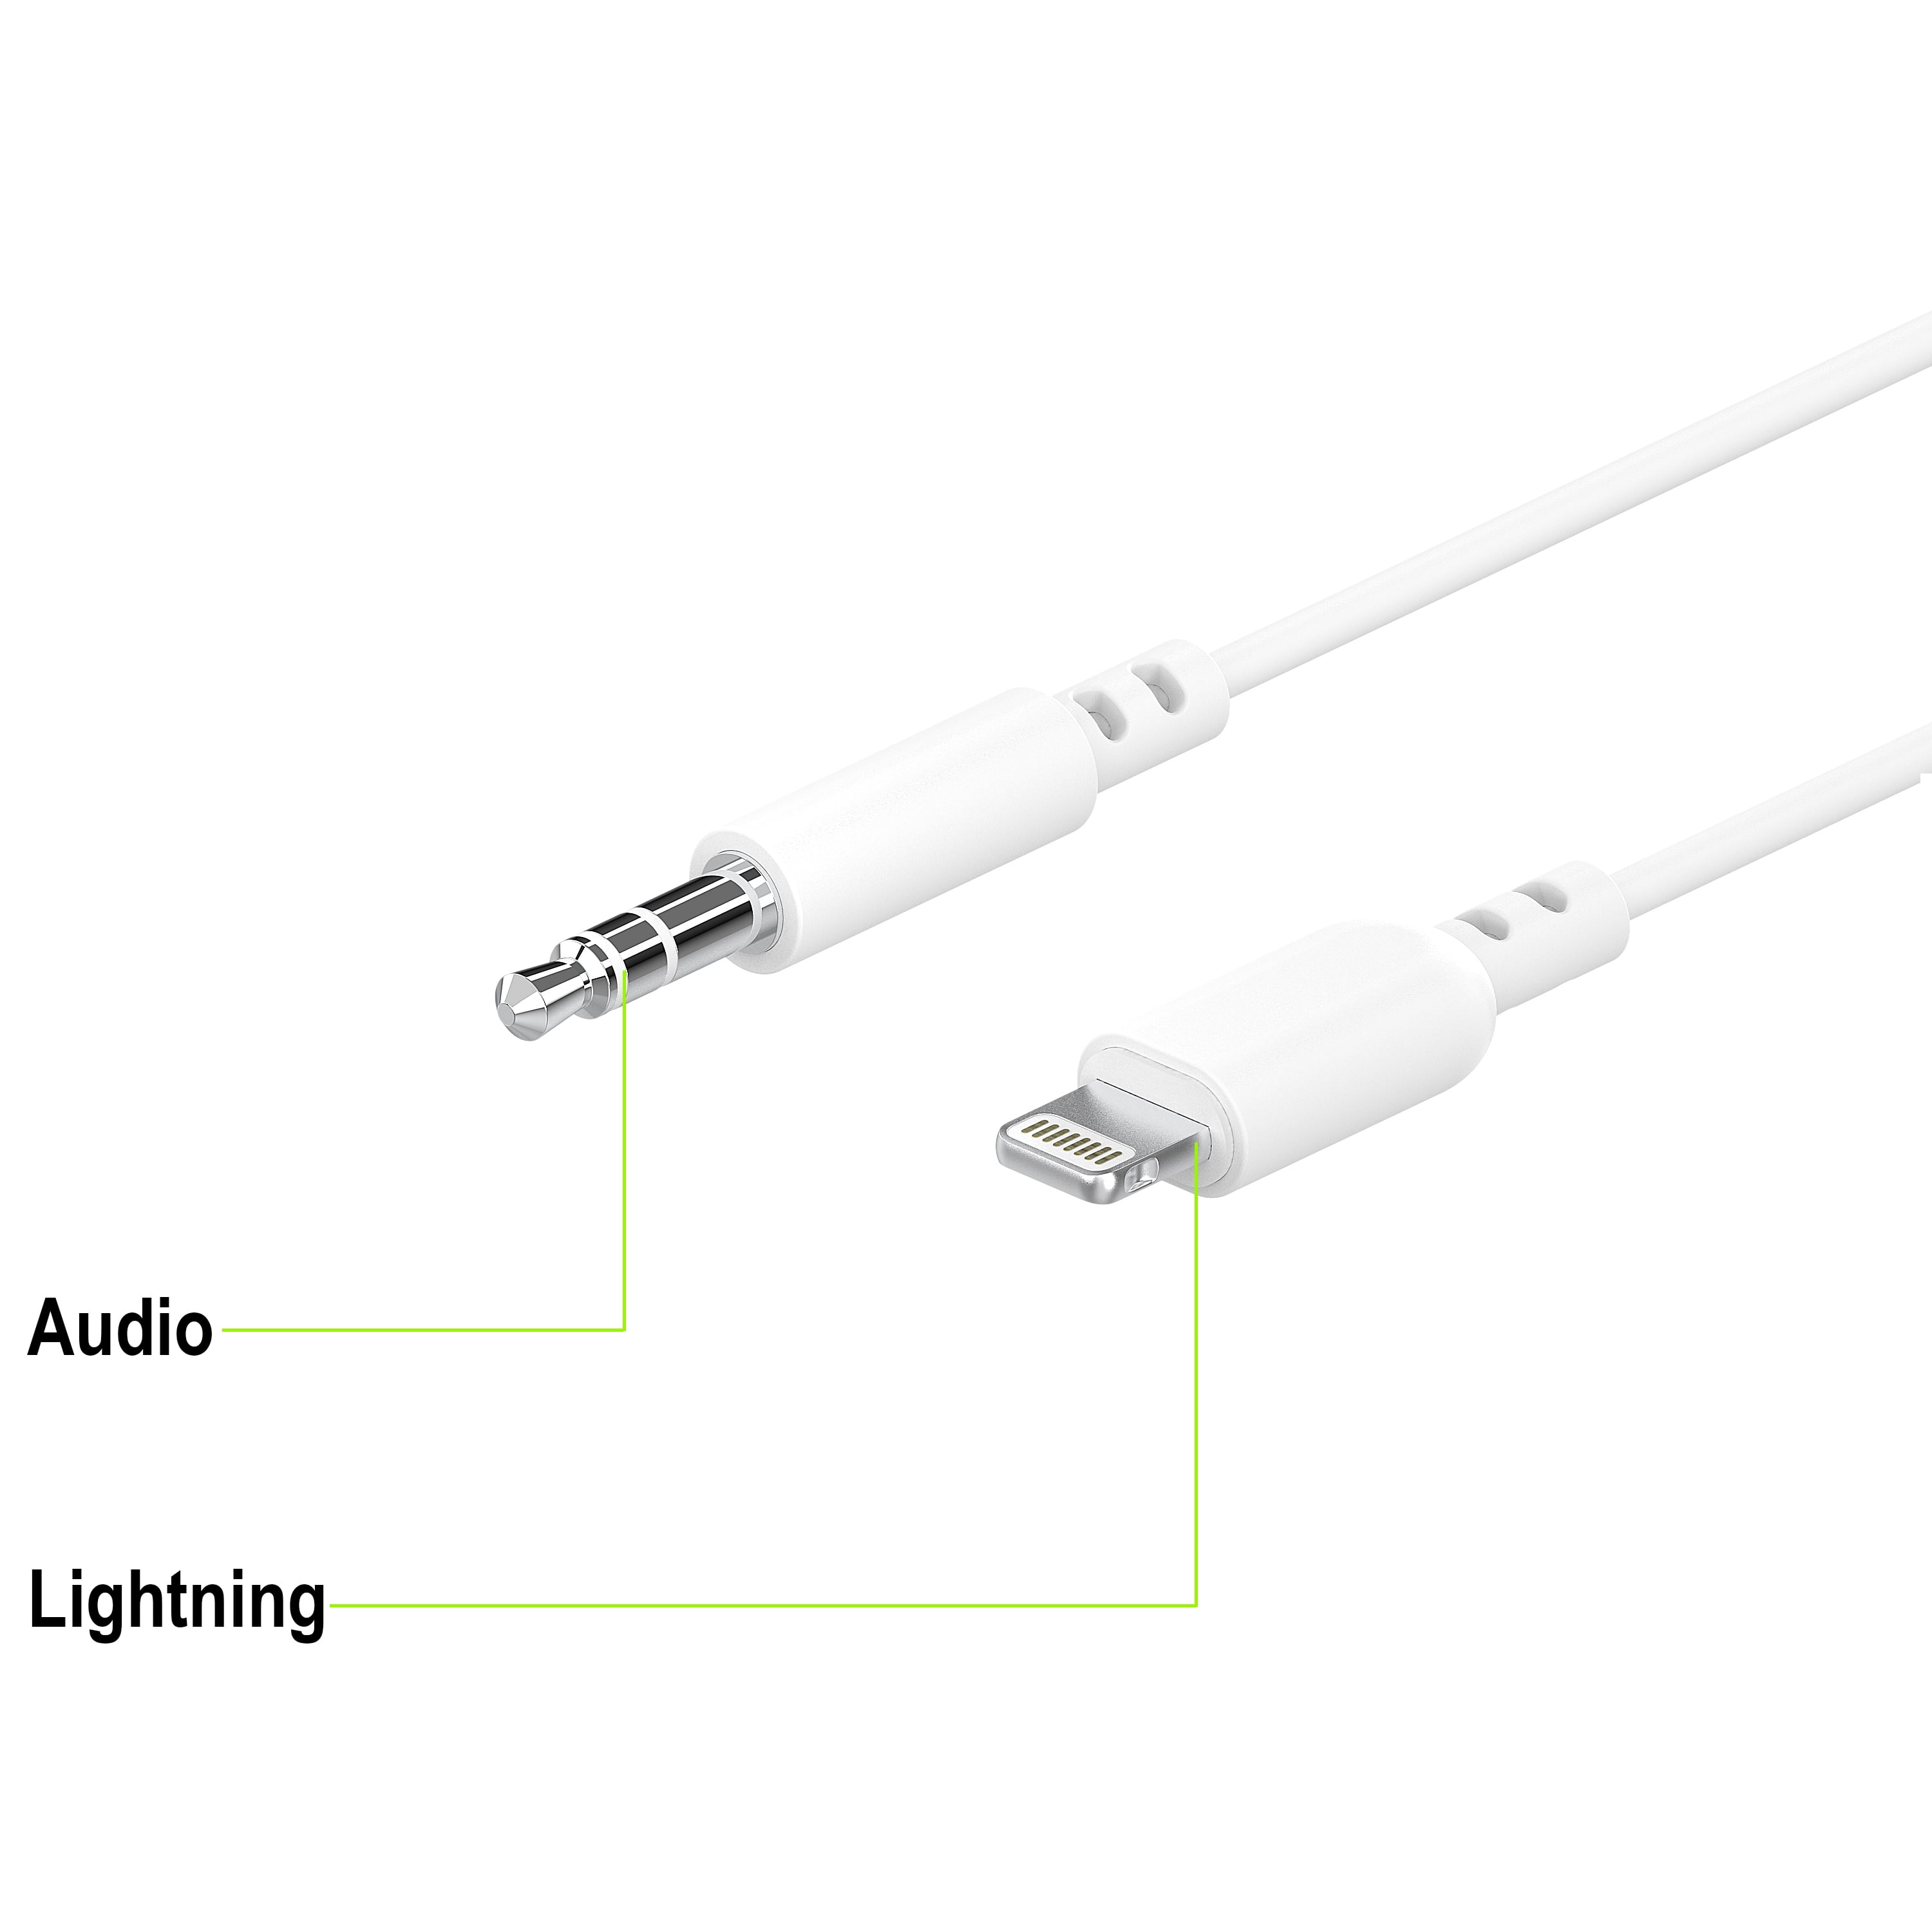 UA-009  Adaptador Lightning para iPhone - Jack + Lightning